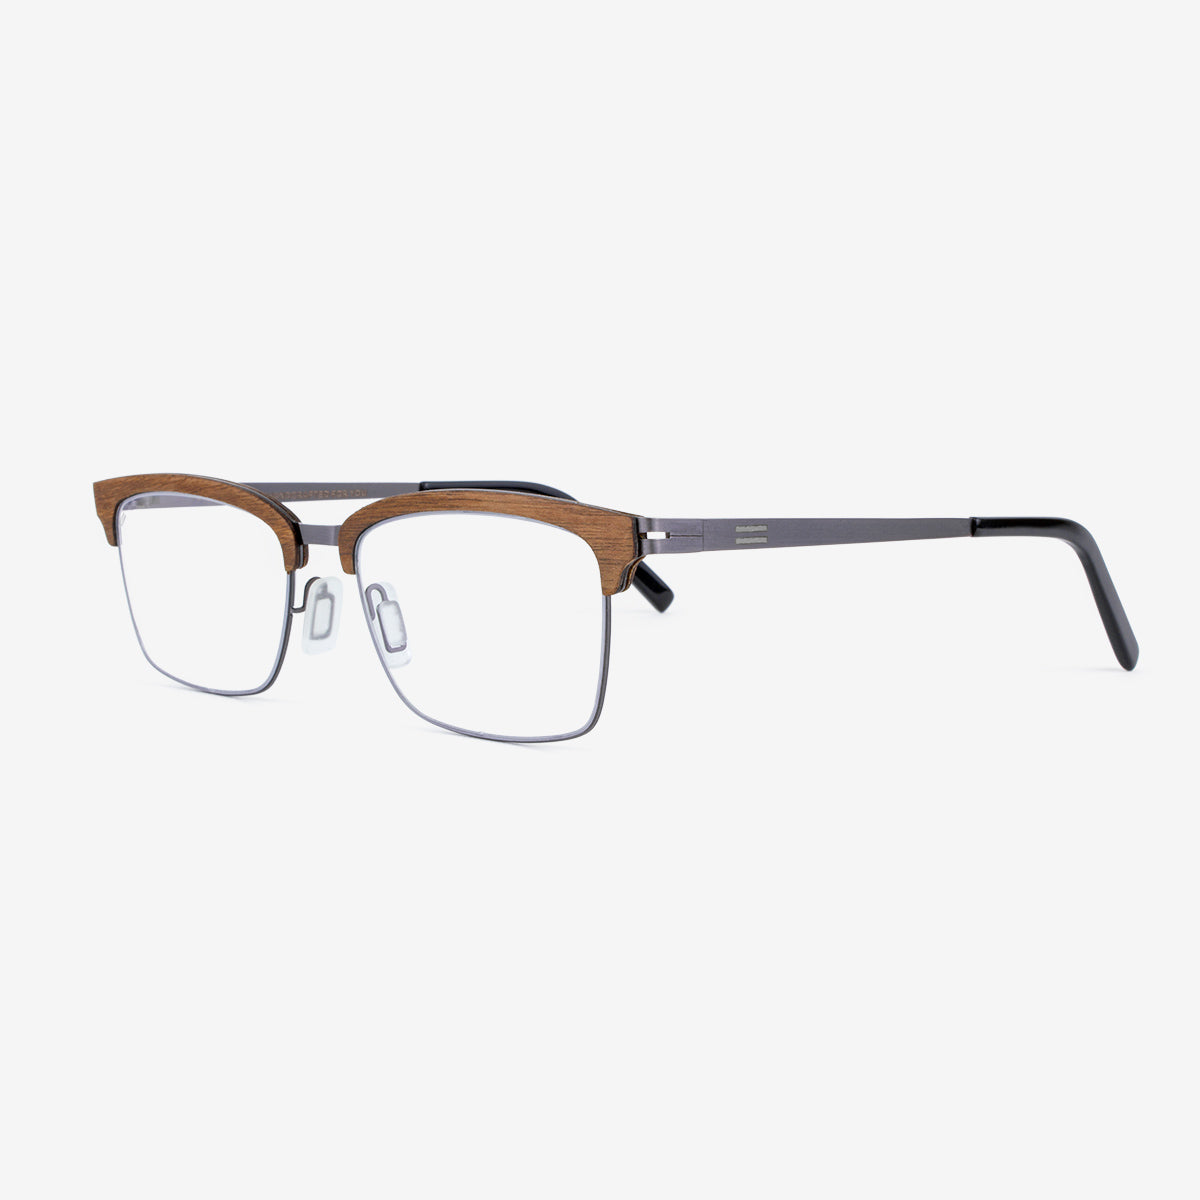 Stuart - Wood & Metal Eyeglasses